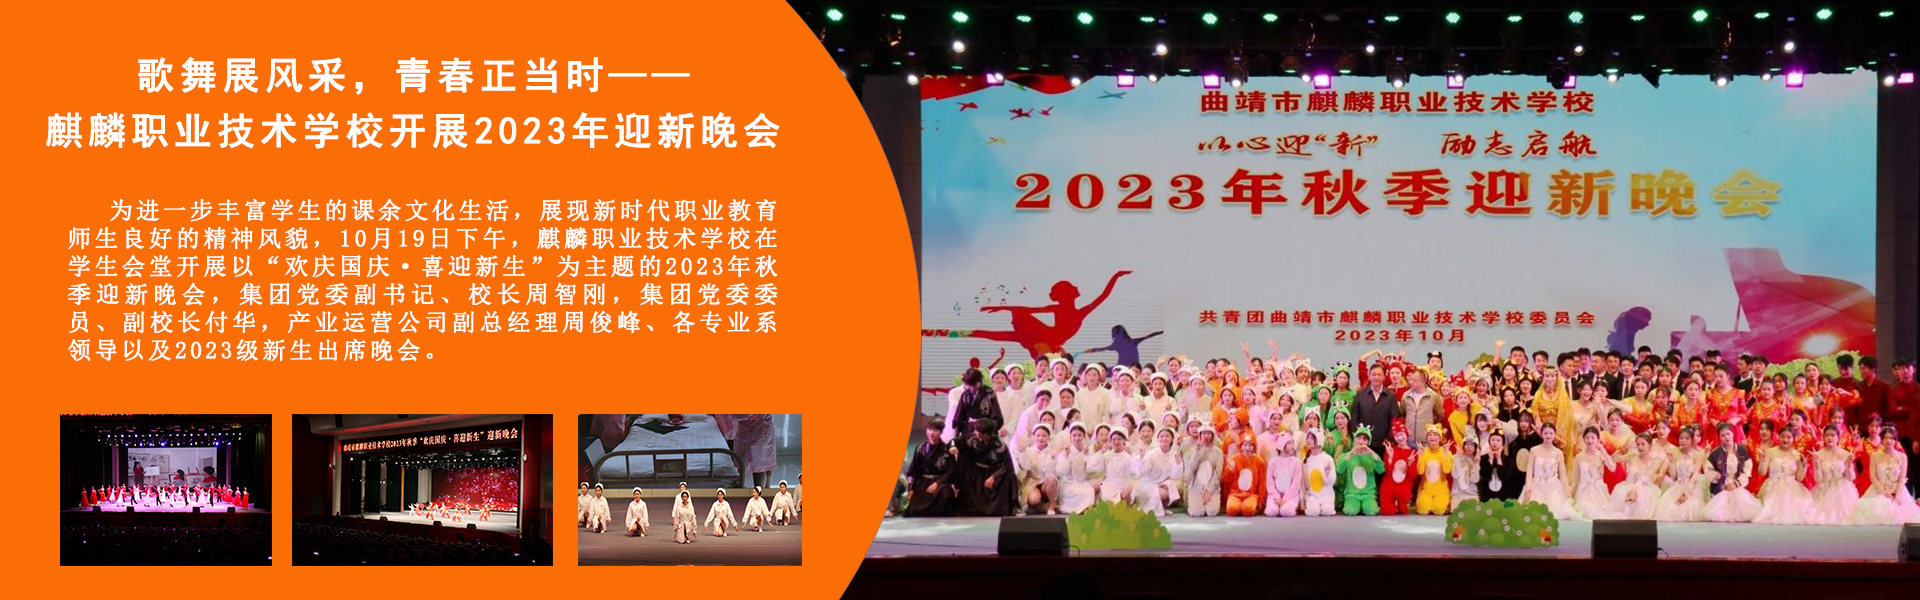 歌舞展风采，青春正当时——麒麟职业技术学校开展2023年迎新晚会